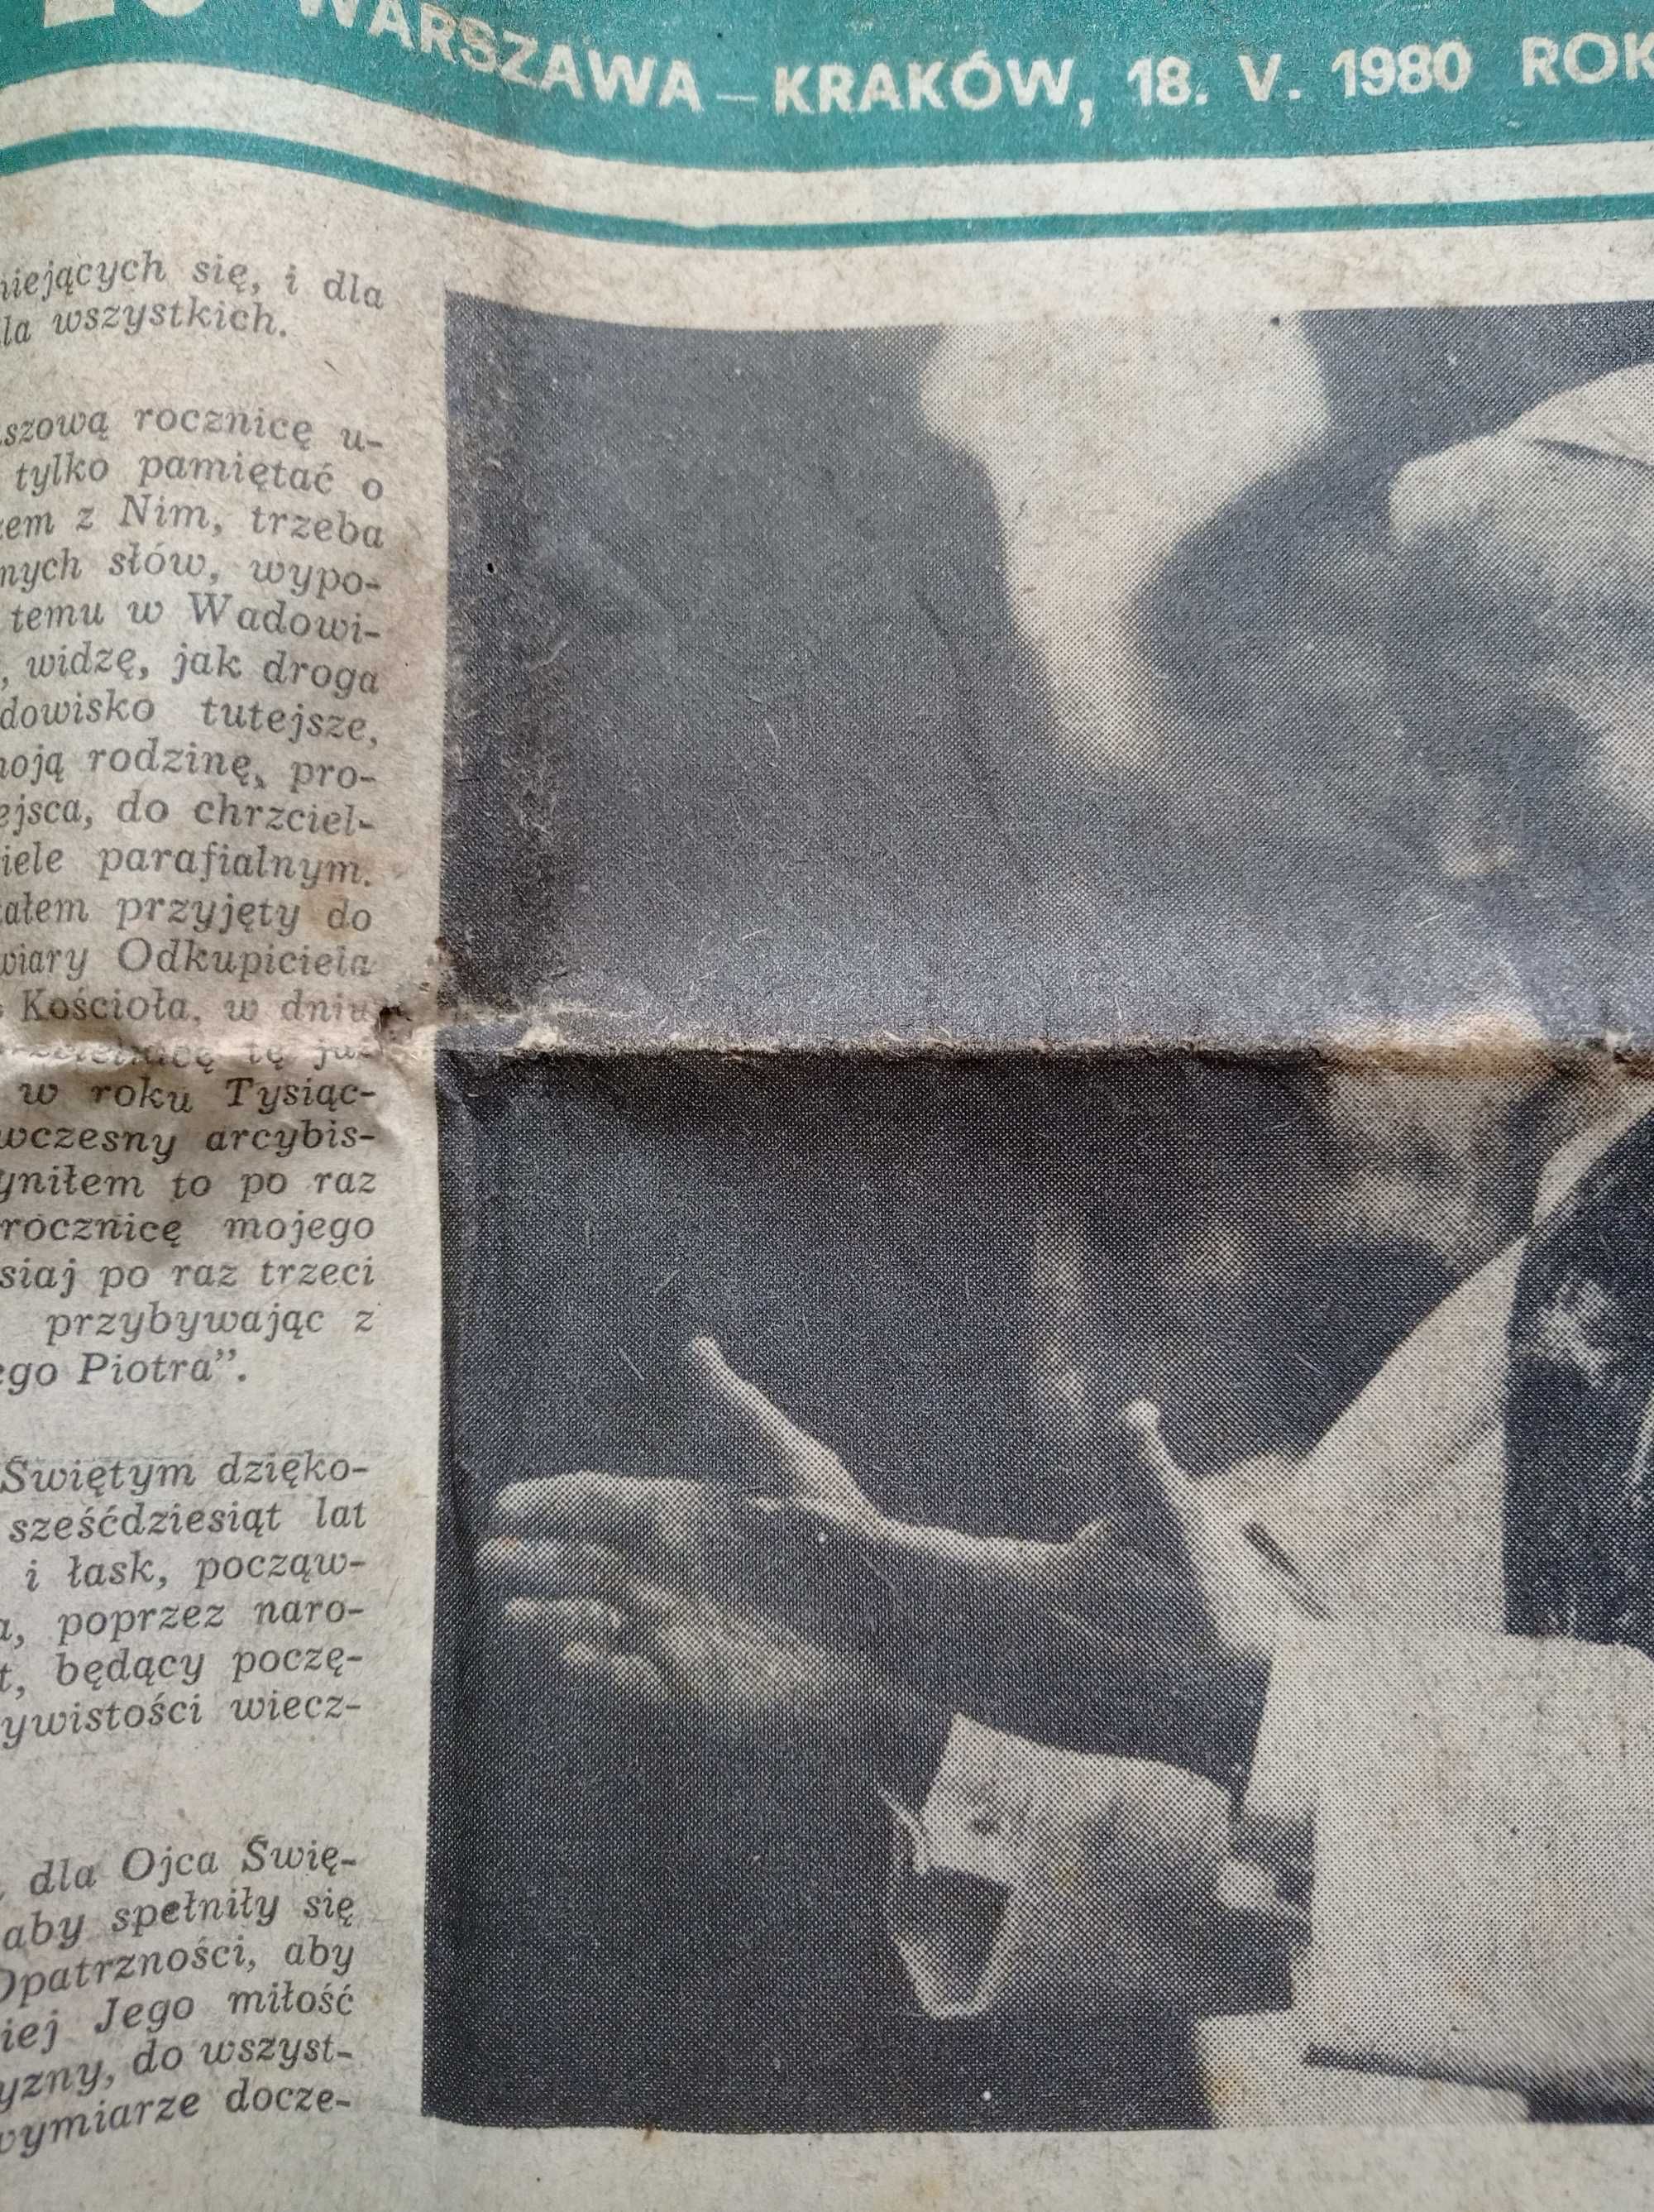 Kierunki tygodnik nr 20 / 1980; 18 maja 1980